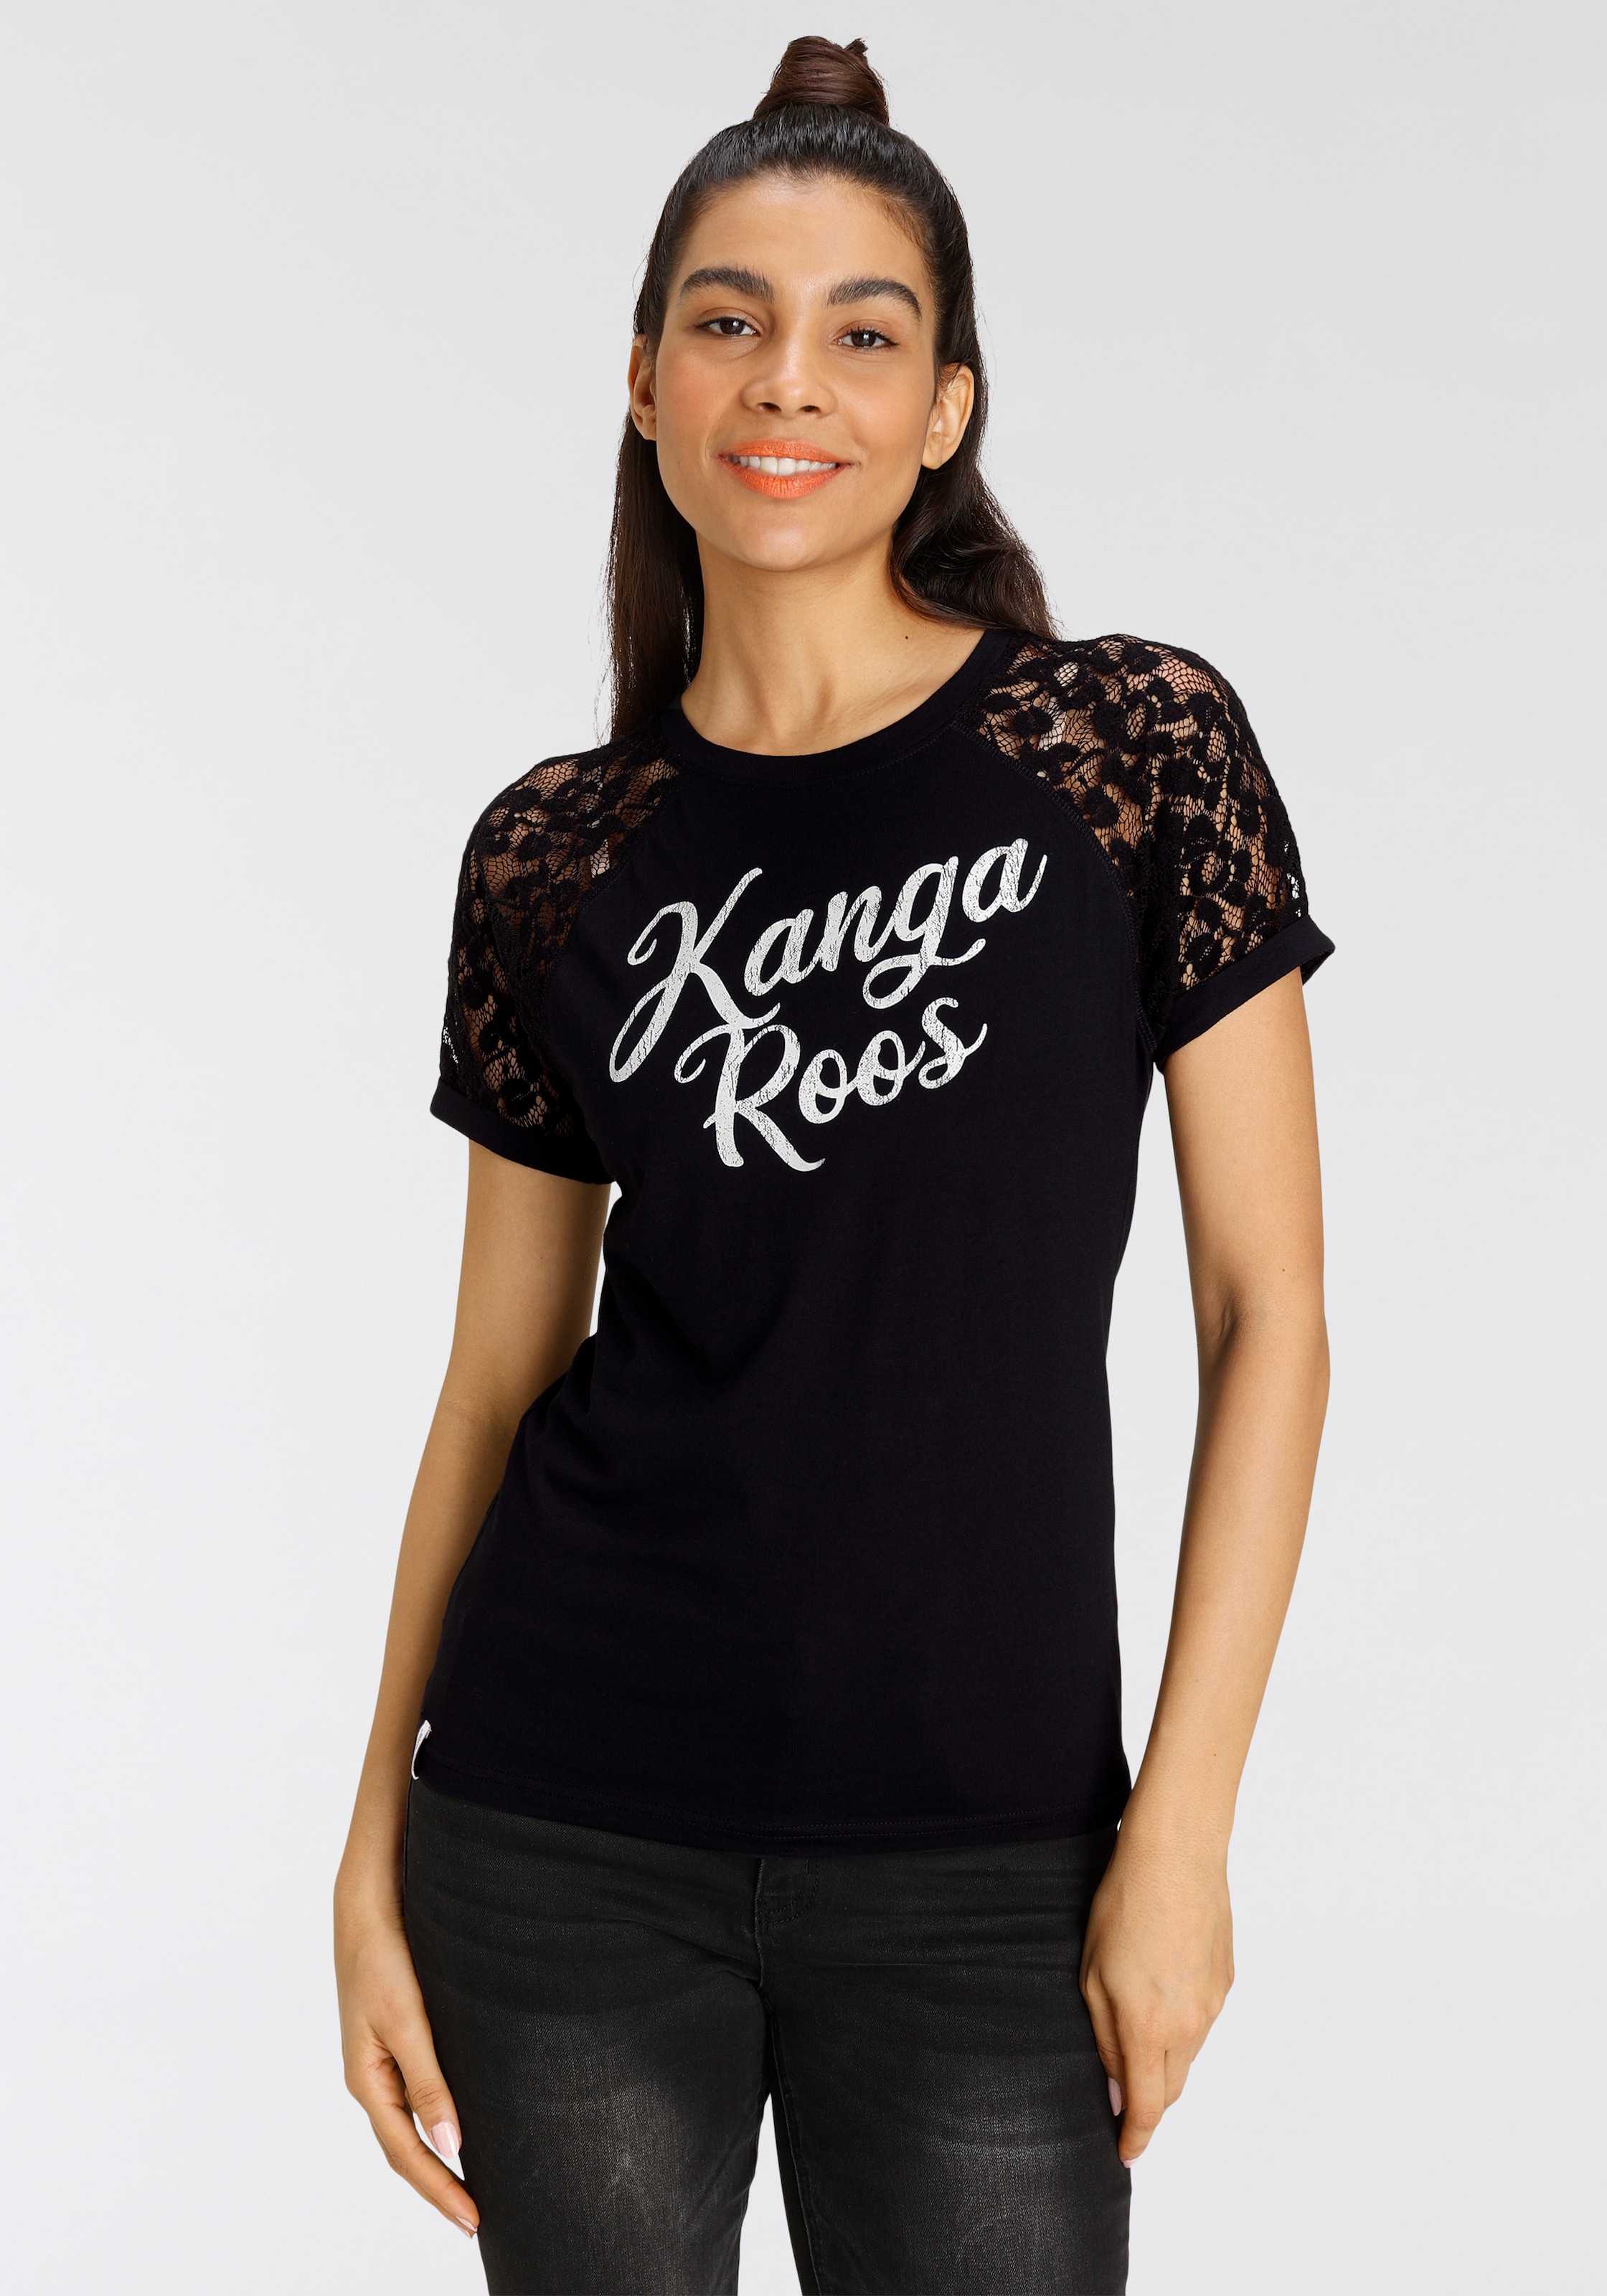 KOLLEKTION Raglanärmeln Spitzenshirt Markenschriftzug und KangaROOS mit NEUE